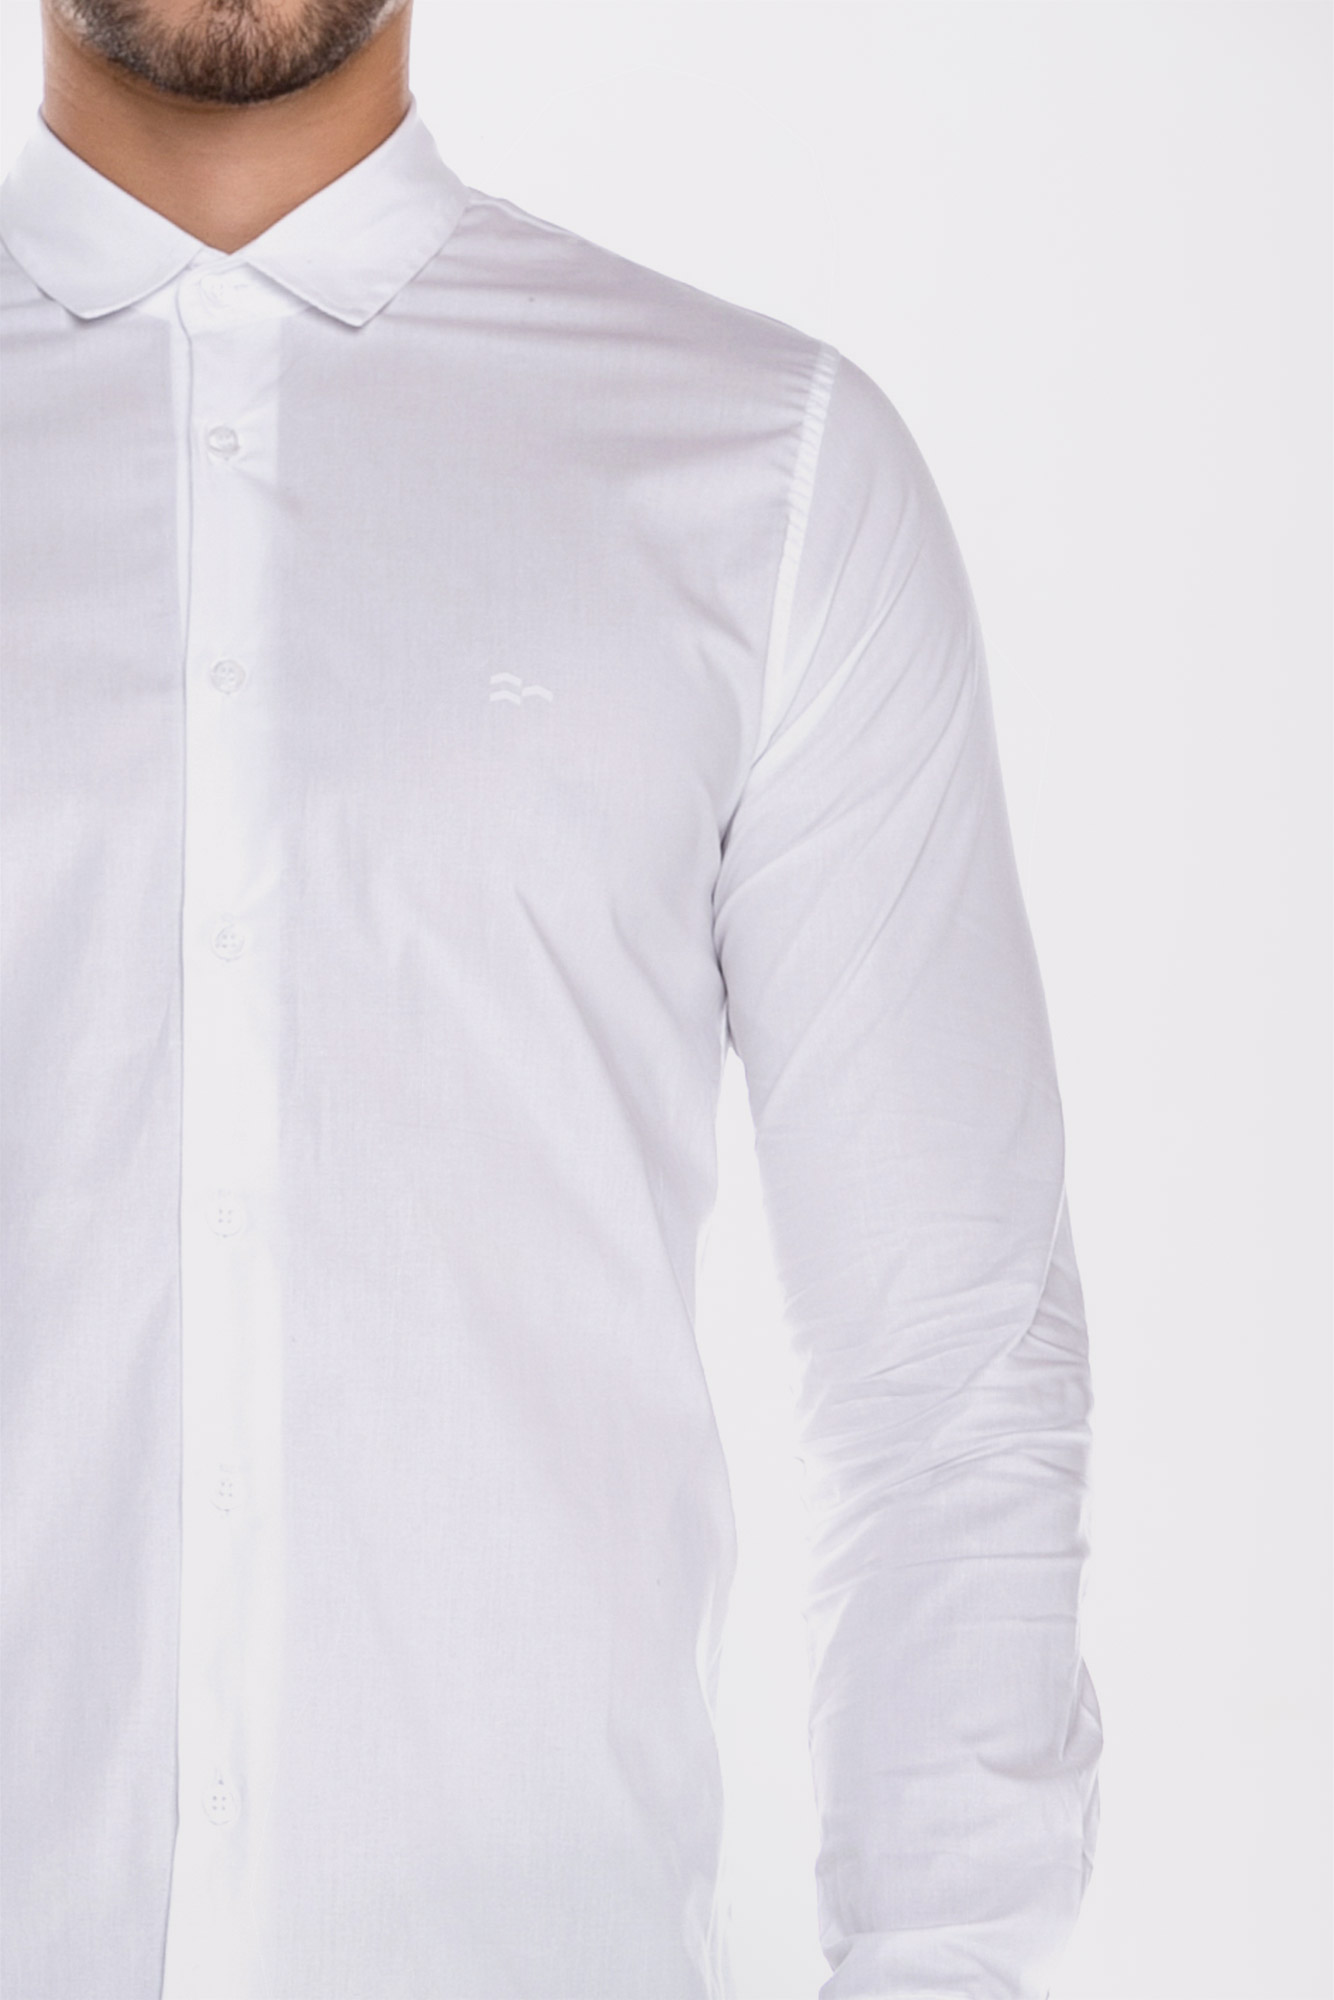 Camisa Social Ml Confort White